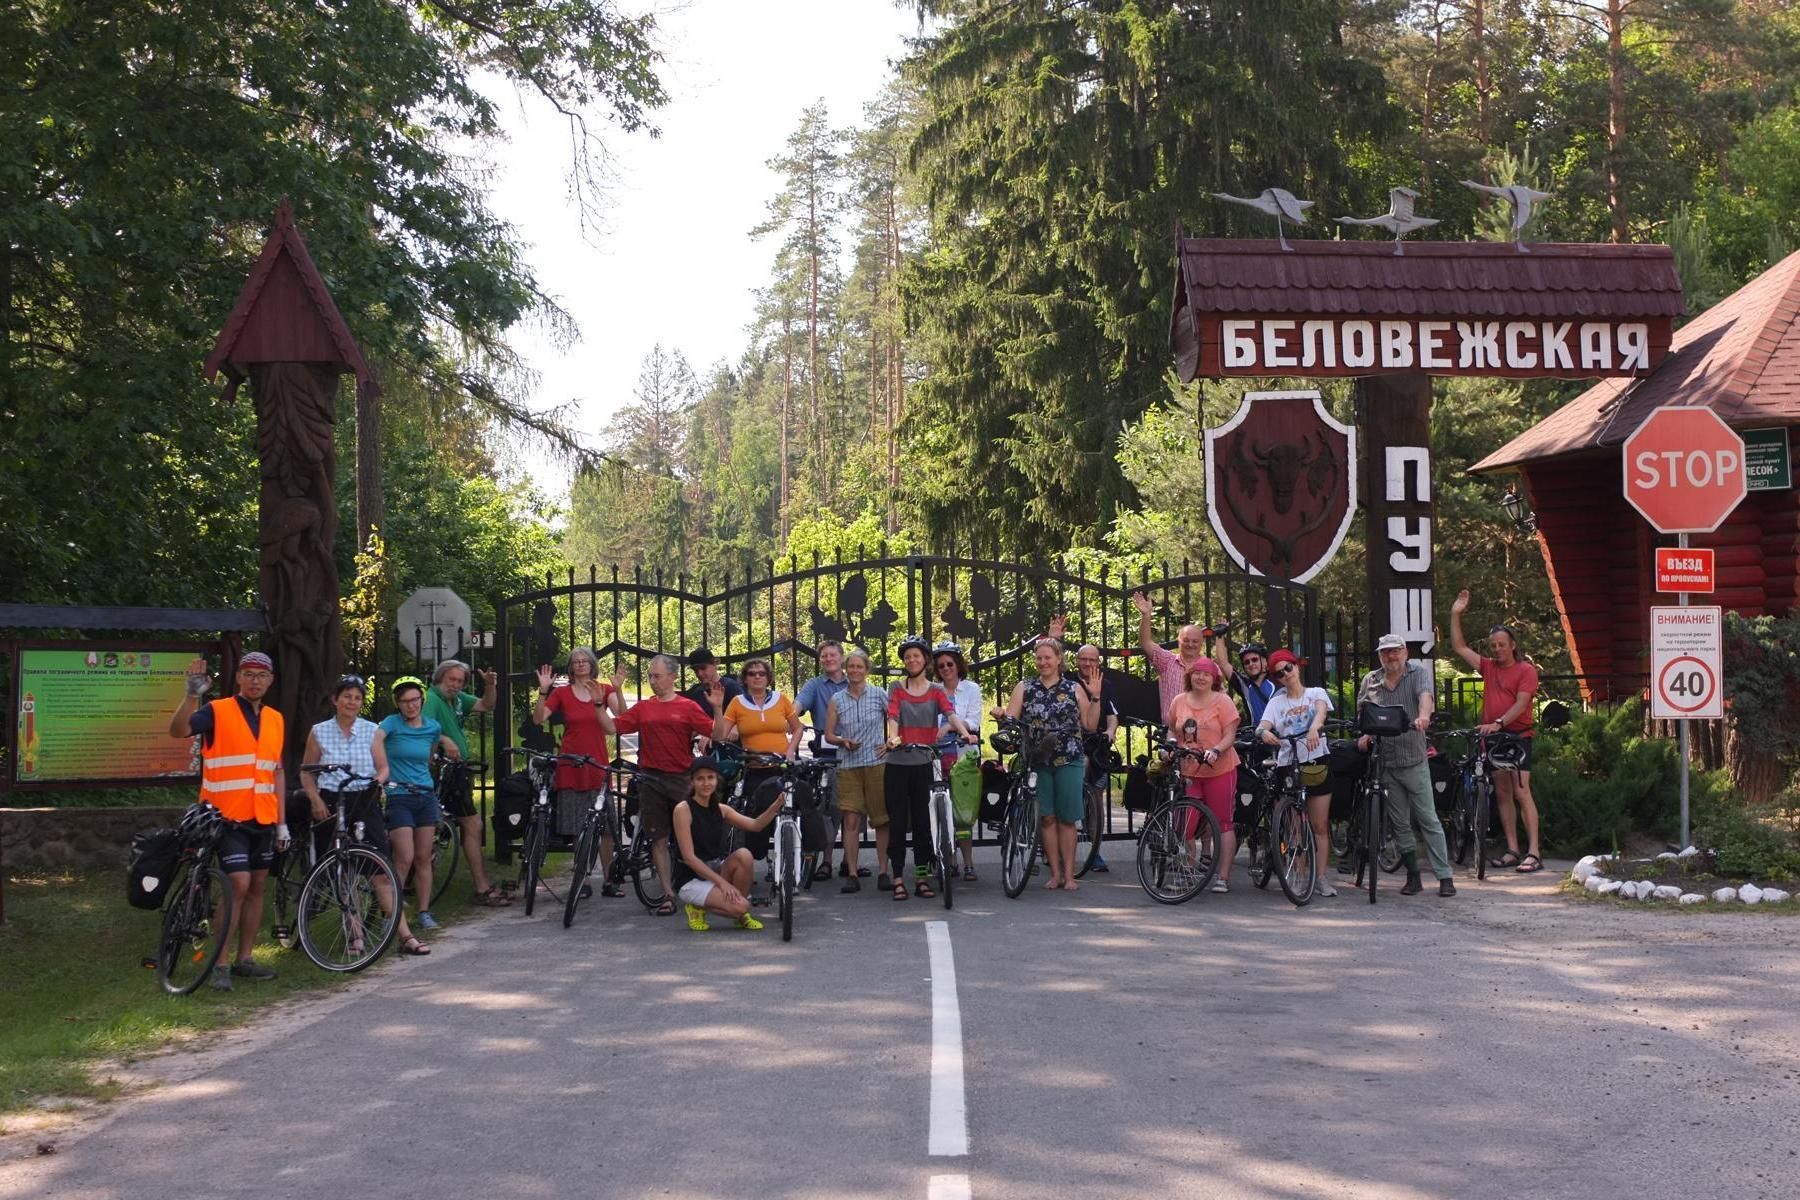  В 2019 году провели экспедицию по национальному парку «Беловежская пуща» на велосипедах для немецко-беларусской группы.